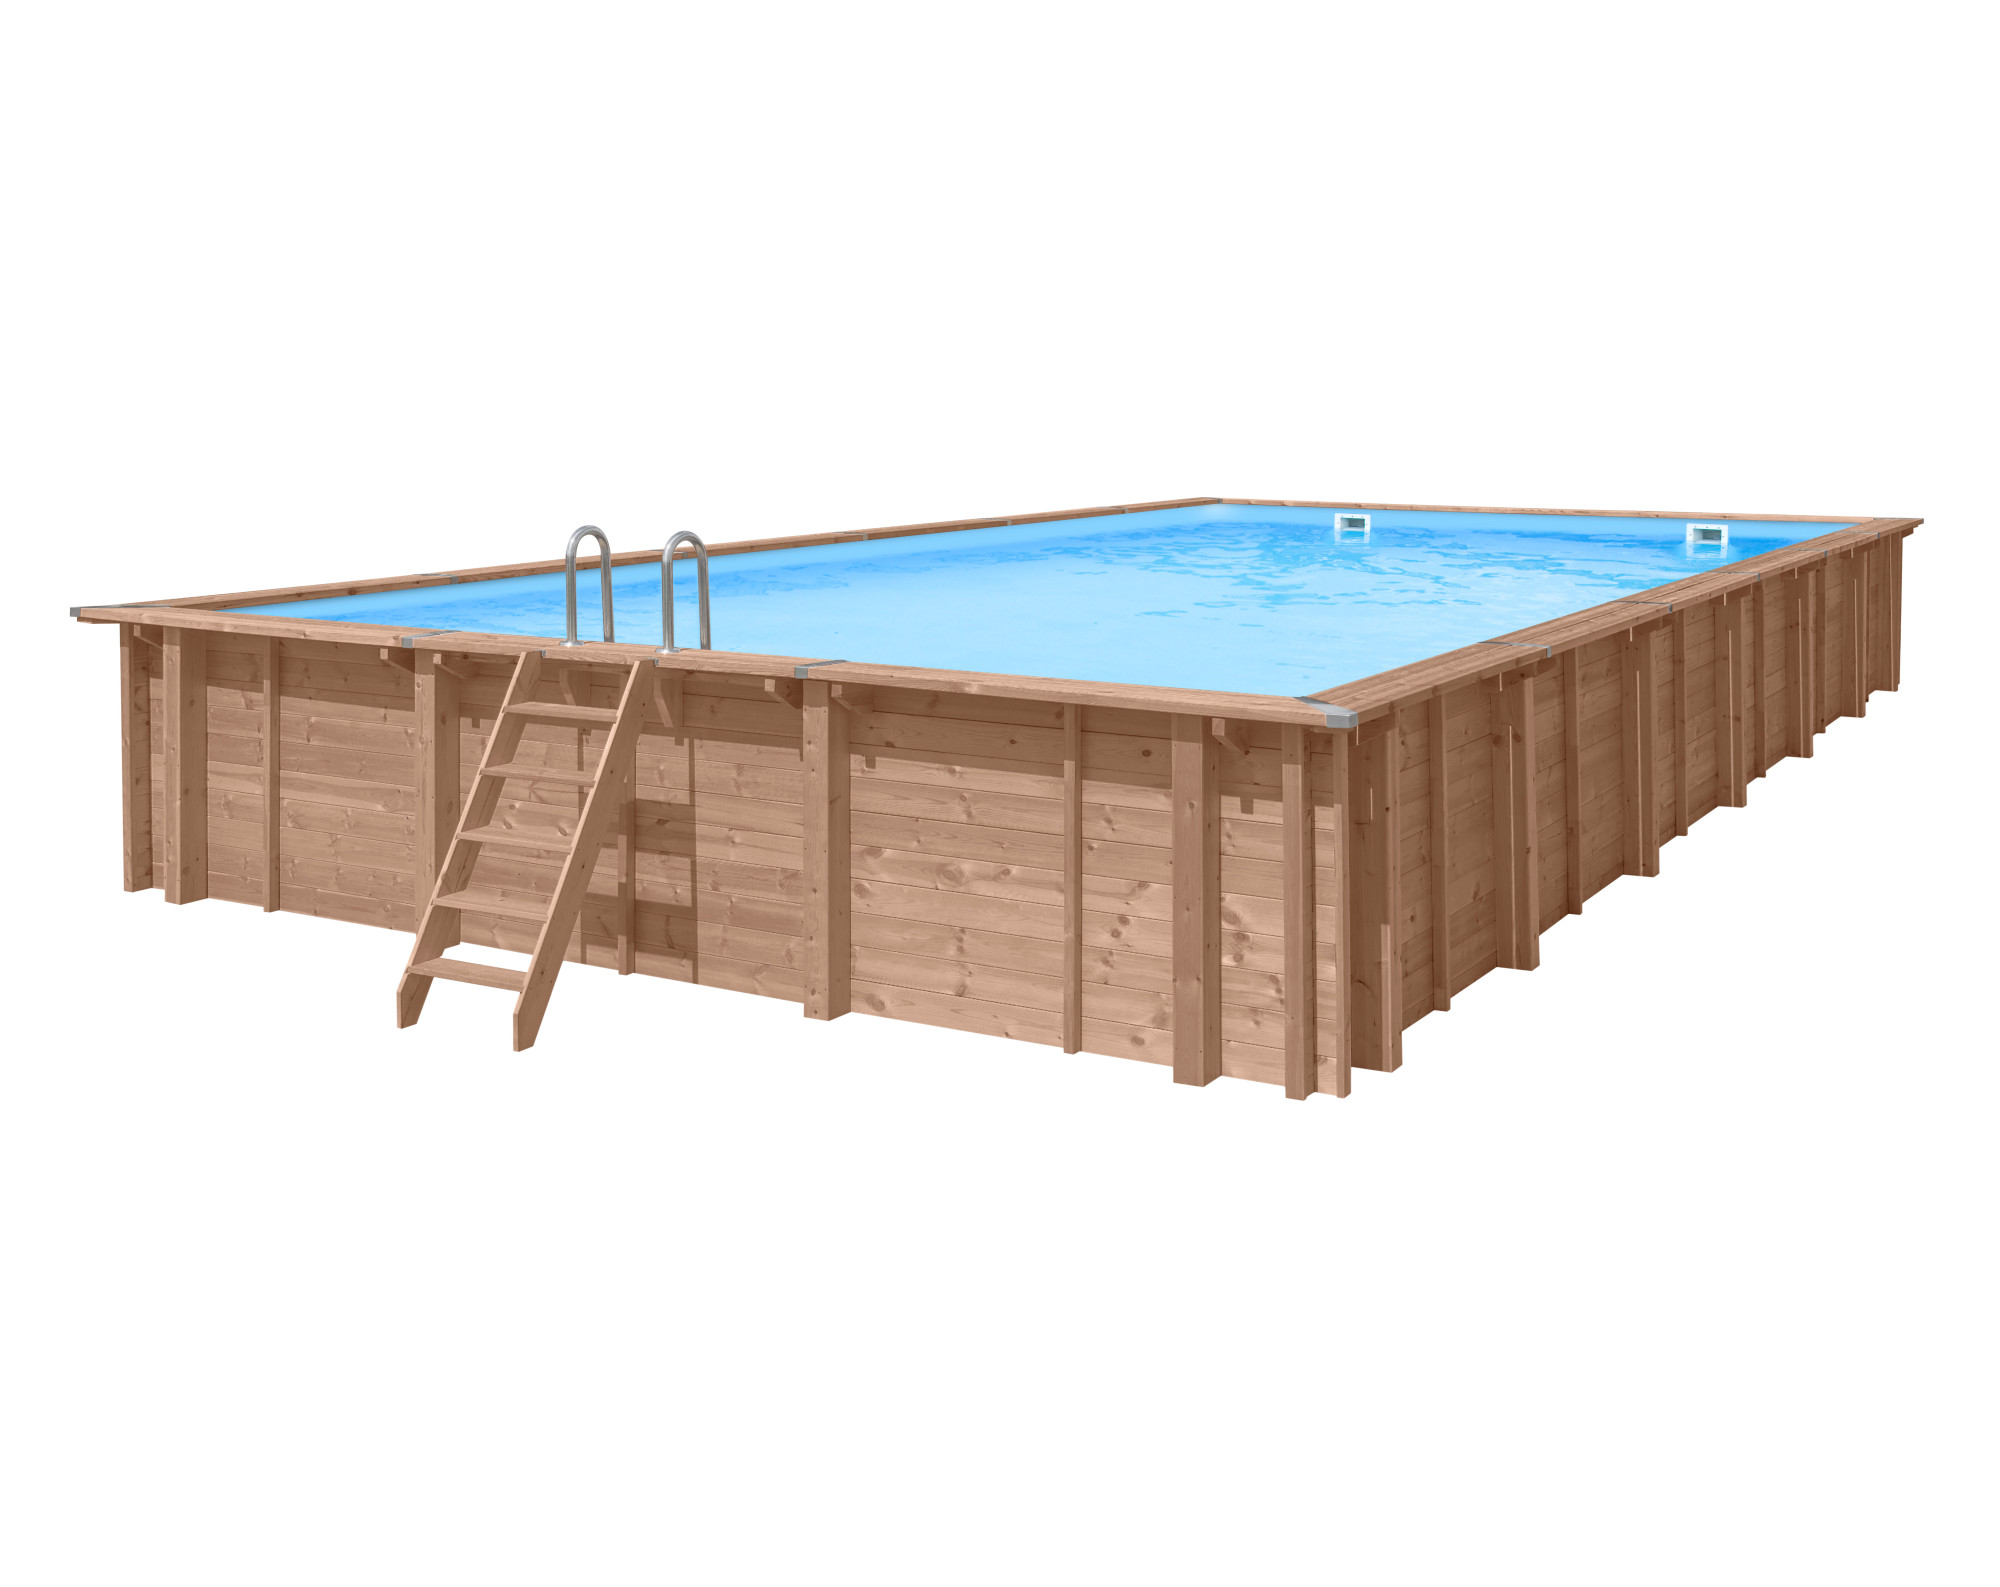 Liner blauw 75/100 hung voor rechthoekig houten zwembad Marbella 400 x 250 cm